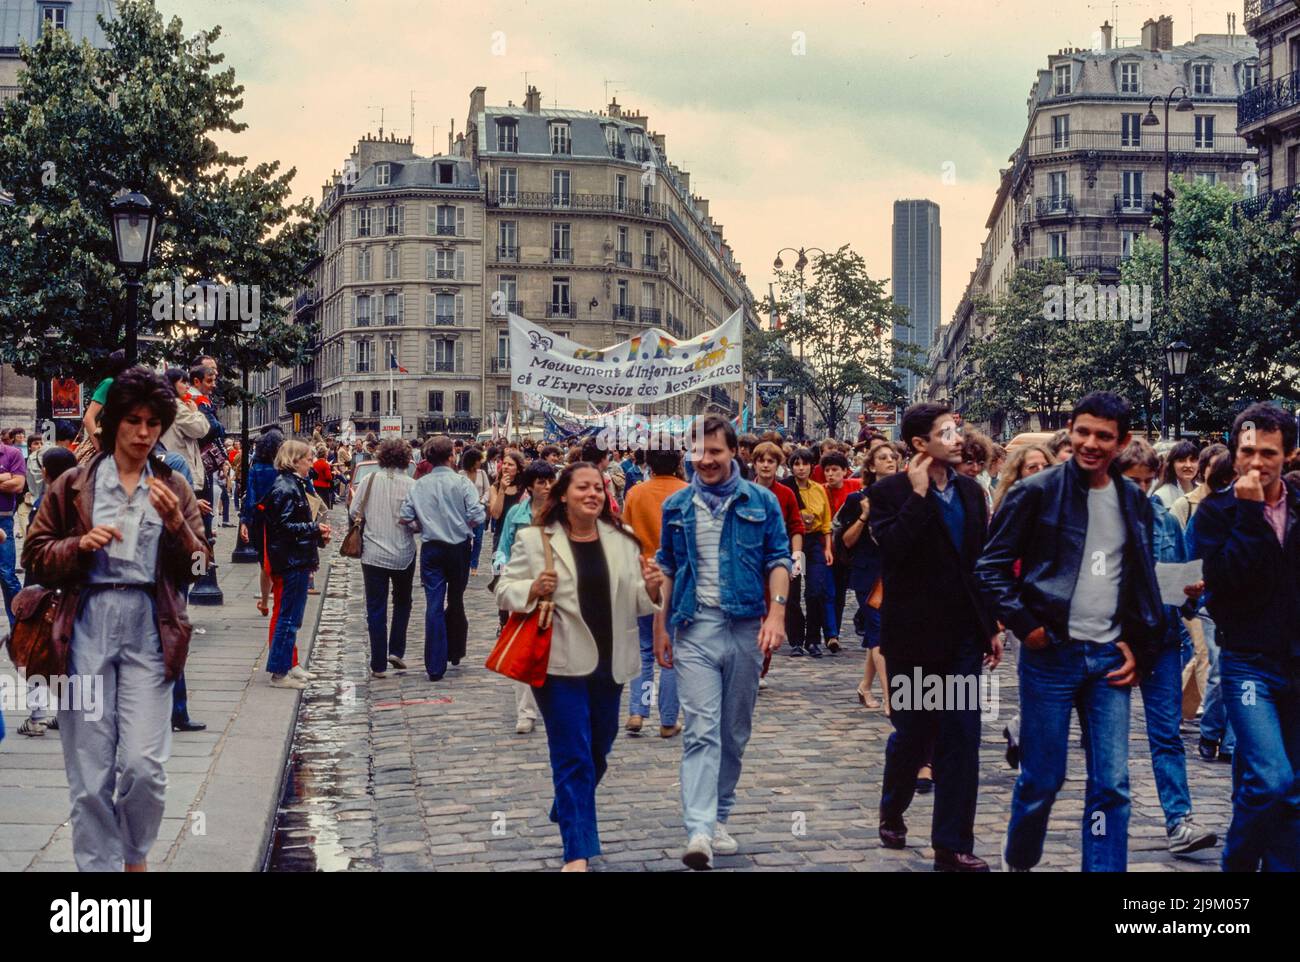 Paris, France, Large Crowd People, marching, Scene, LGBT Fierté, Gay Pride March, on Street, Saint Germain des Prés, 1982, 1980s France, gay protest vintage, paris archive photos Stock Photo